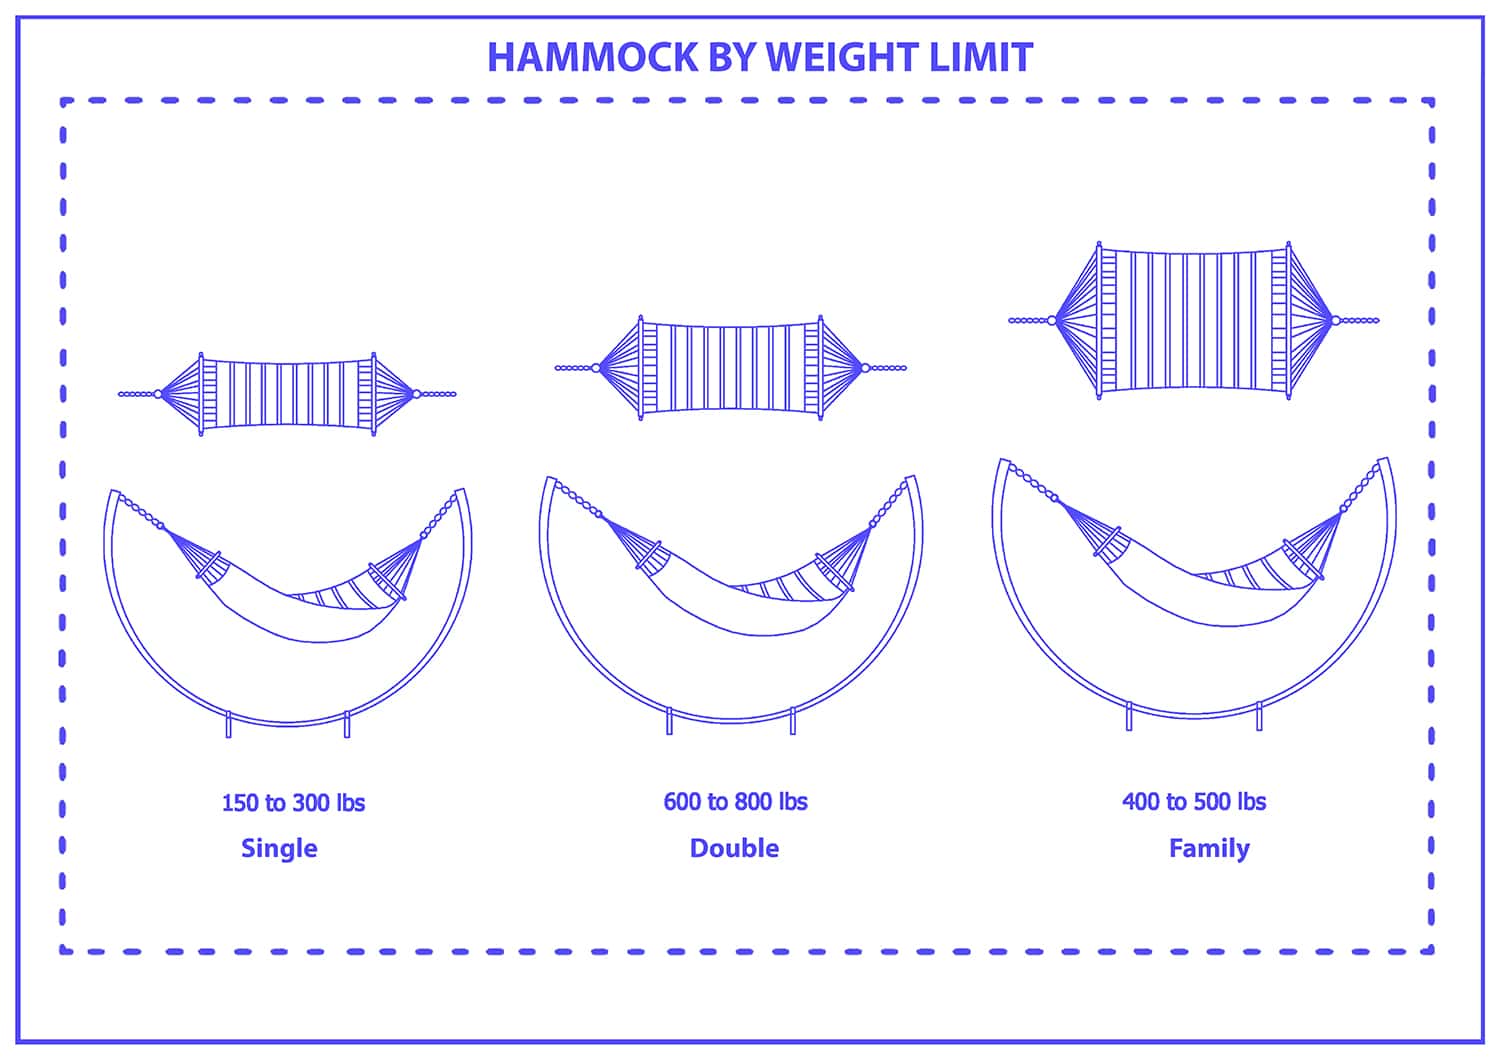 Hammock weight limit